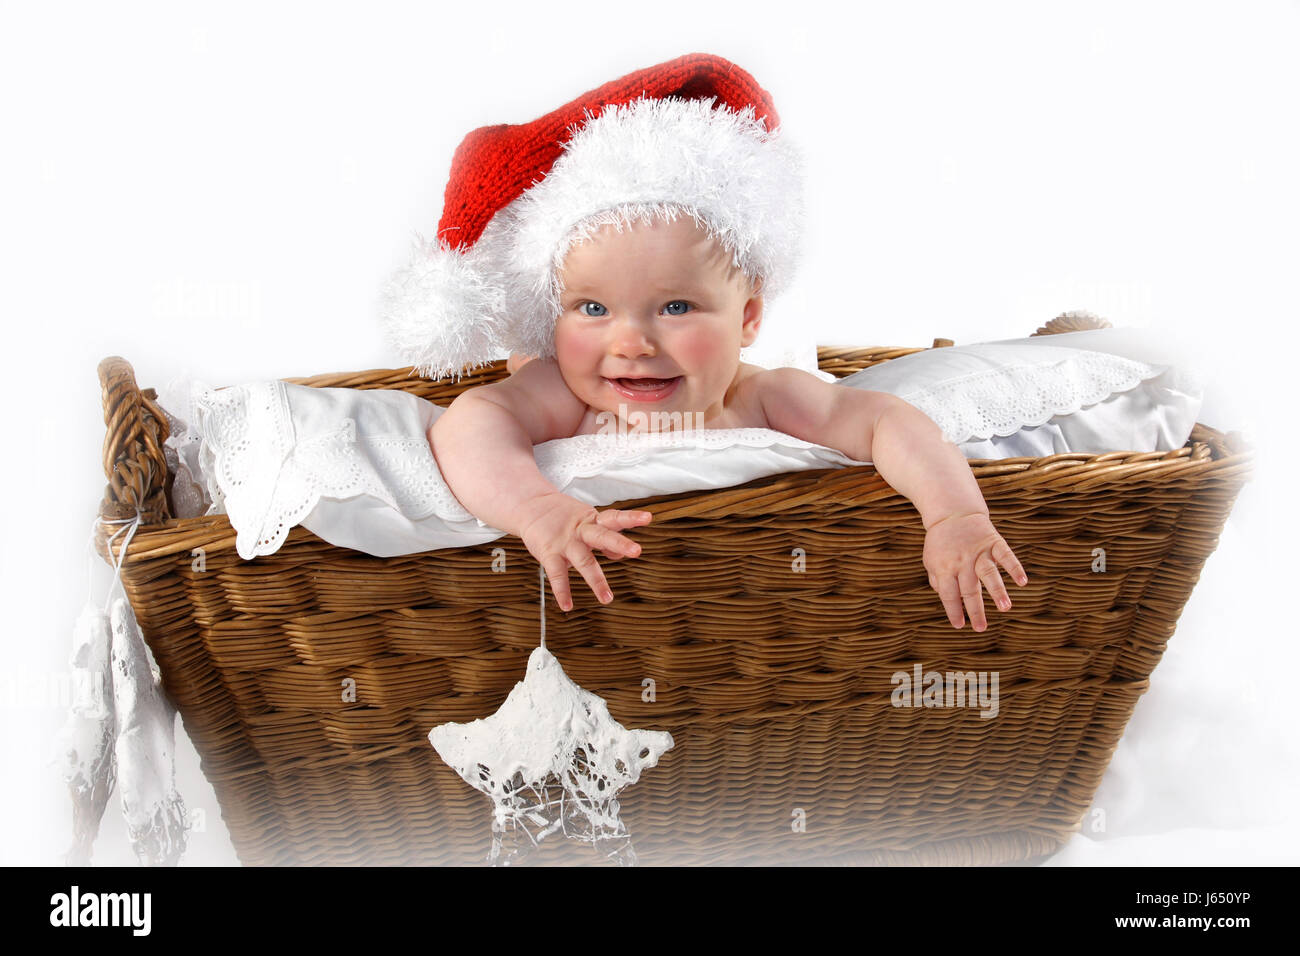 Panier de Noël père hiver prévision agréable noël x-mas rire Banque D'Images